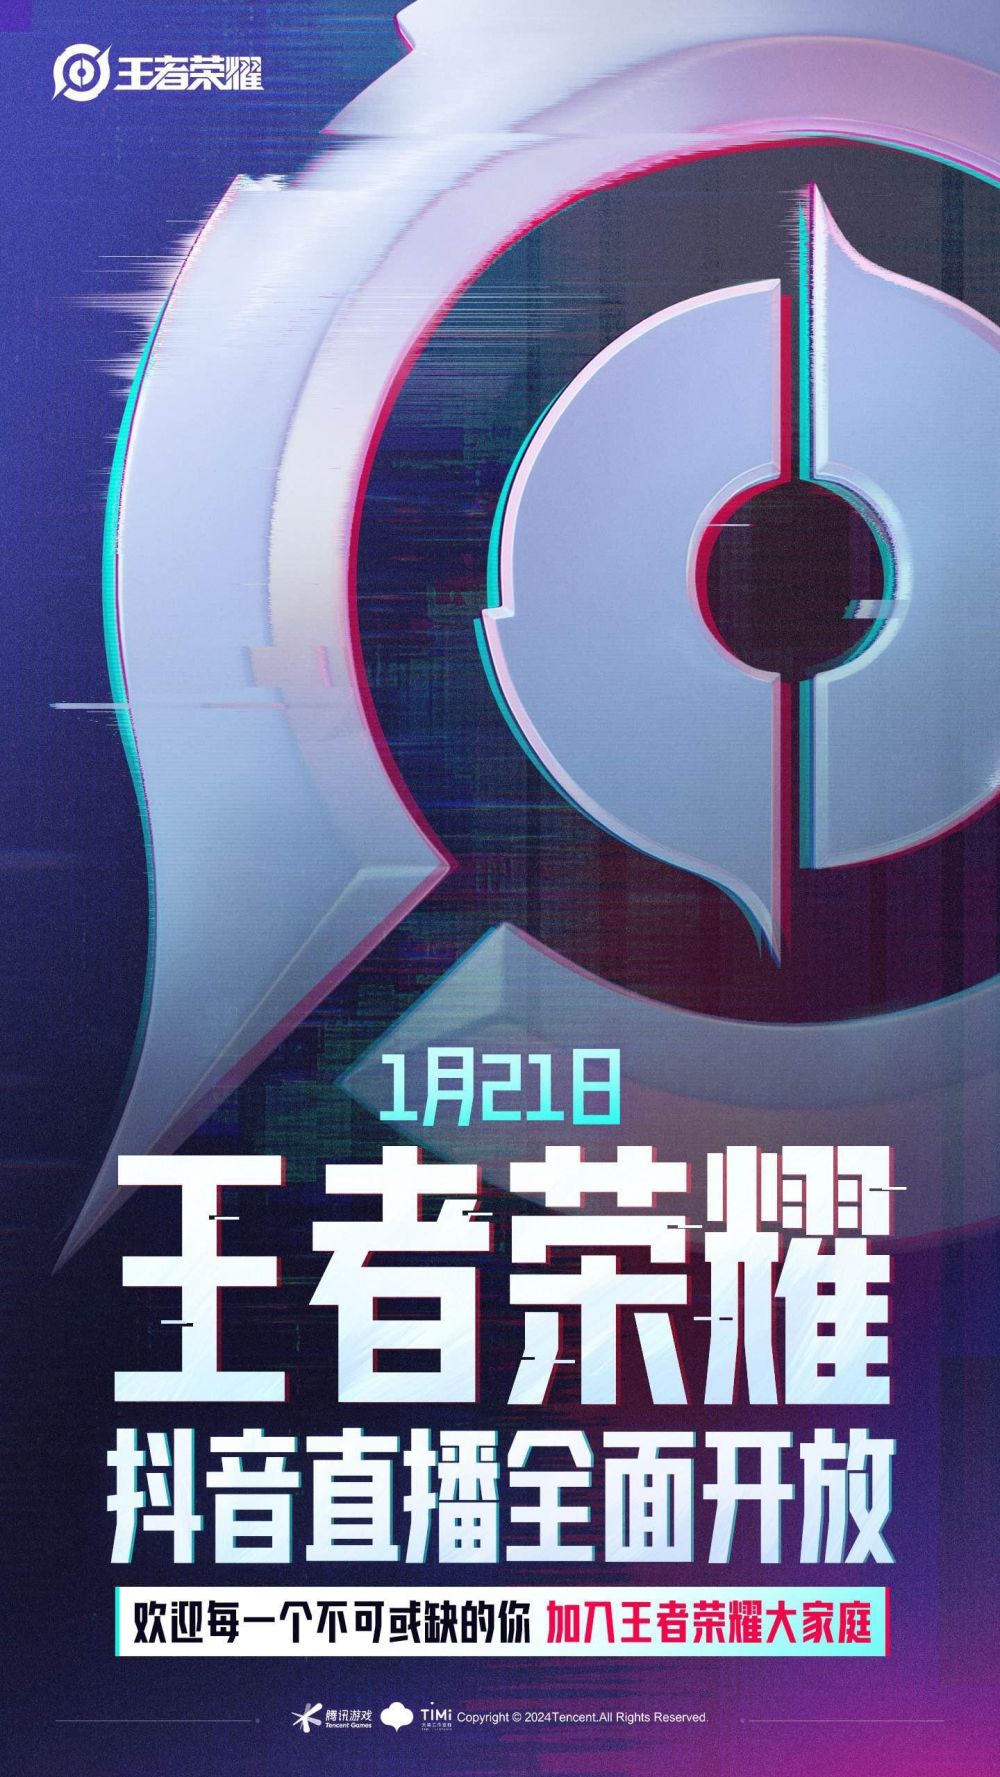 腾讯游戏王者荣耀官宣1月21日全面开放抖音直播